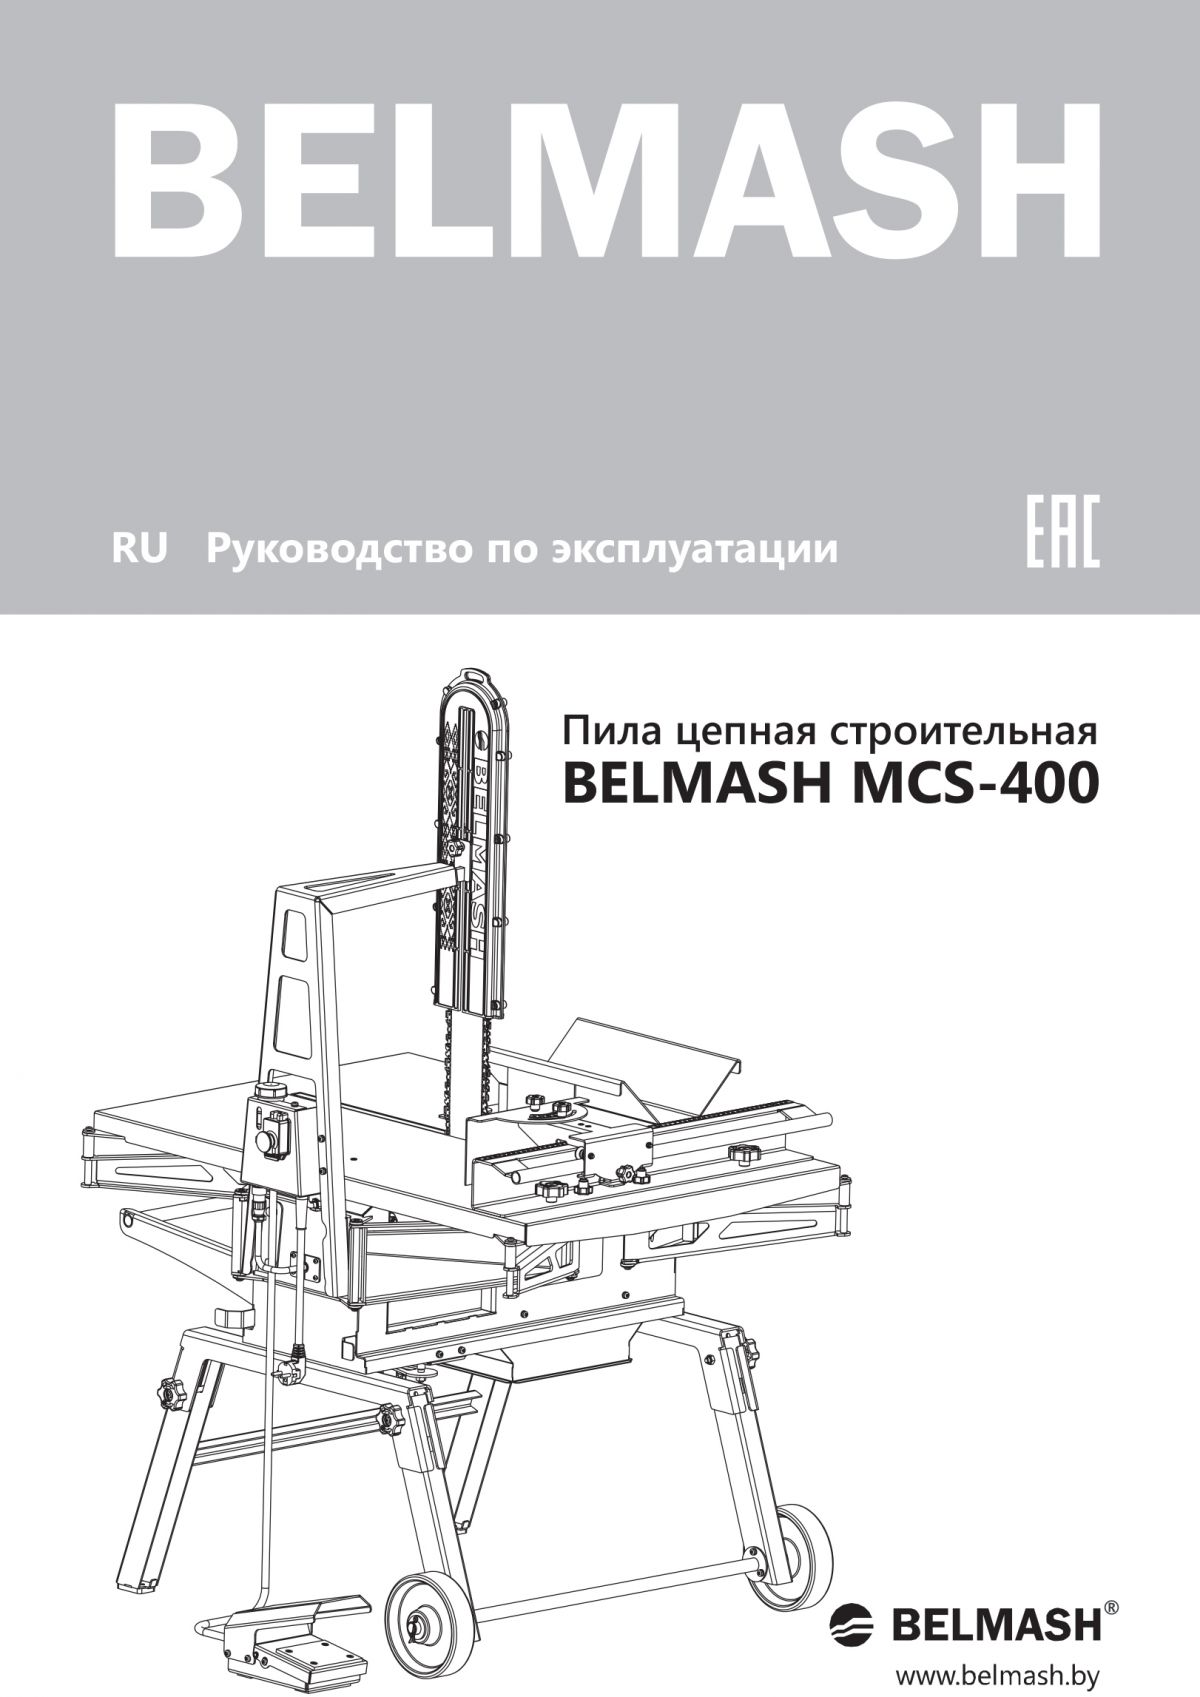 Руководство по эксплуатации для станка MCS-400 (русский язык)